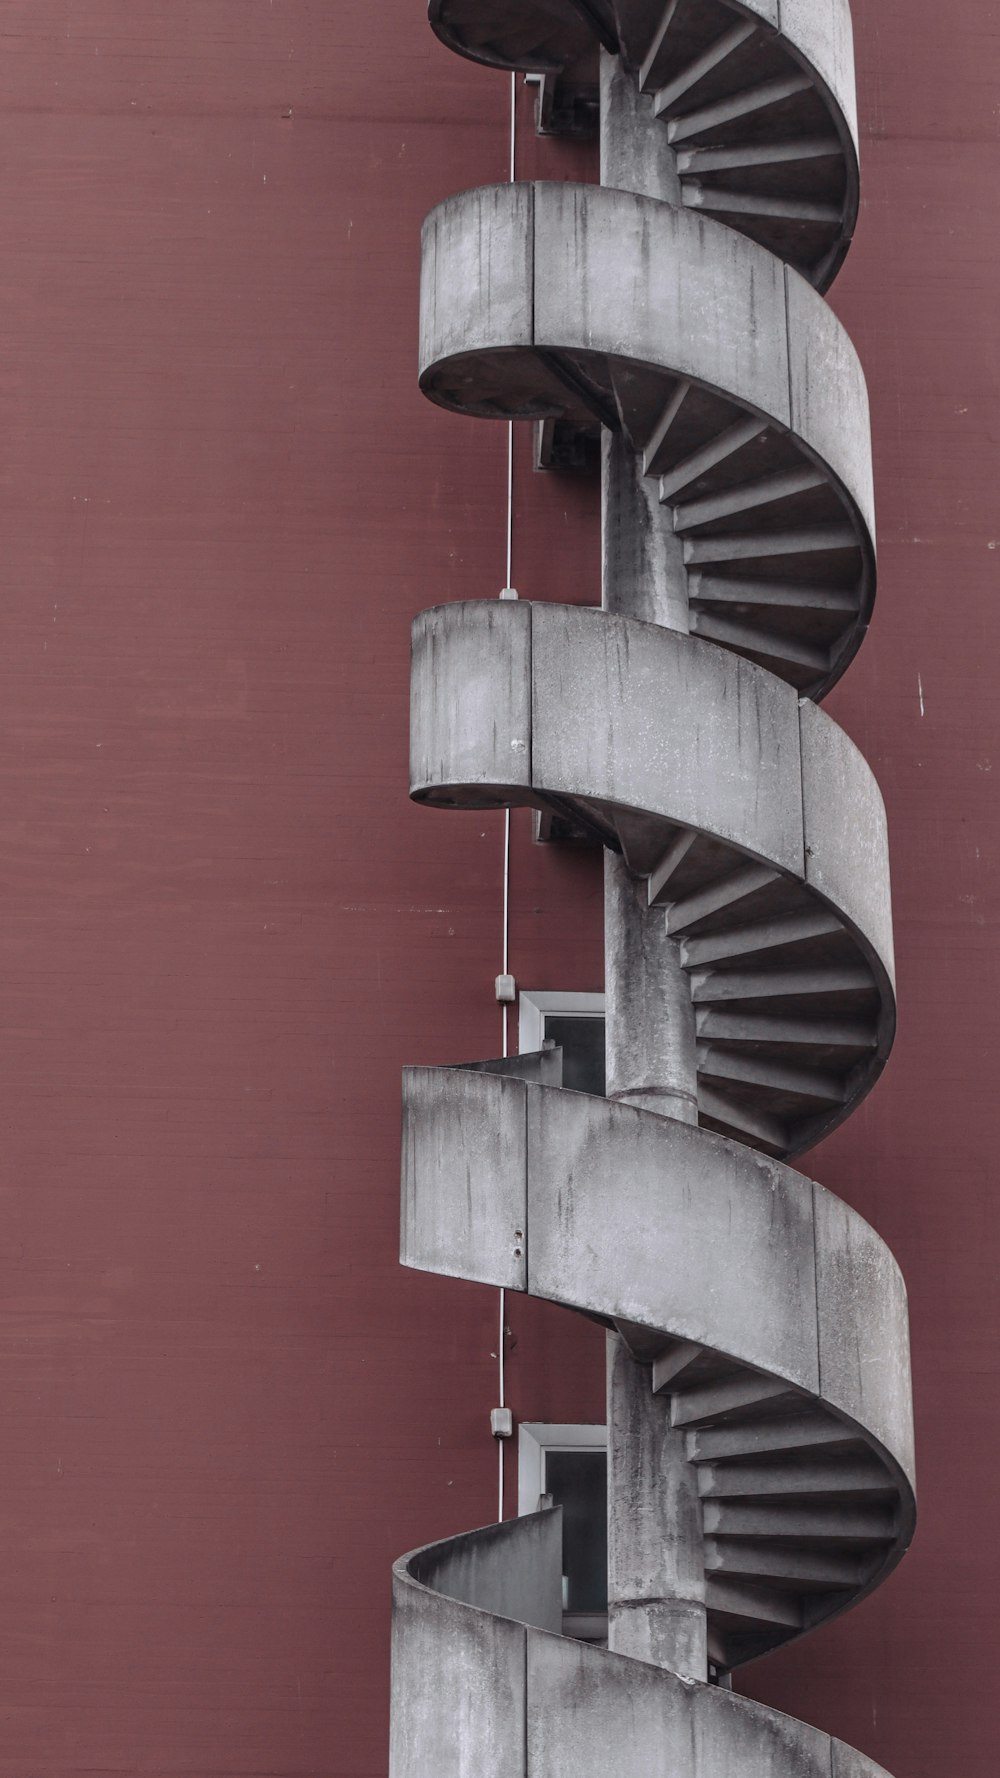 escada em espiral preta na parede vermelha